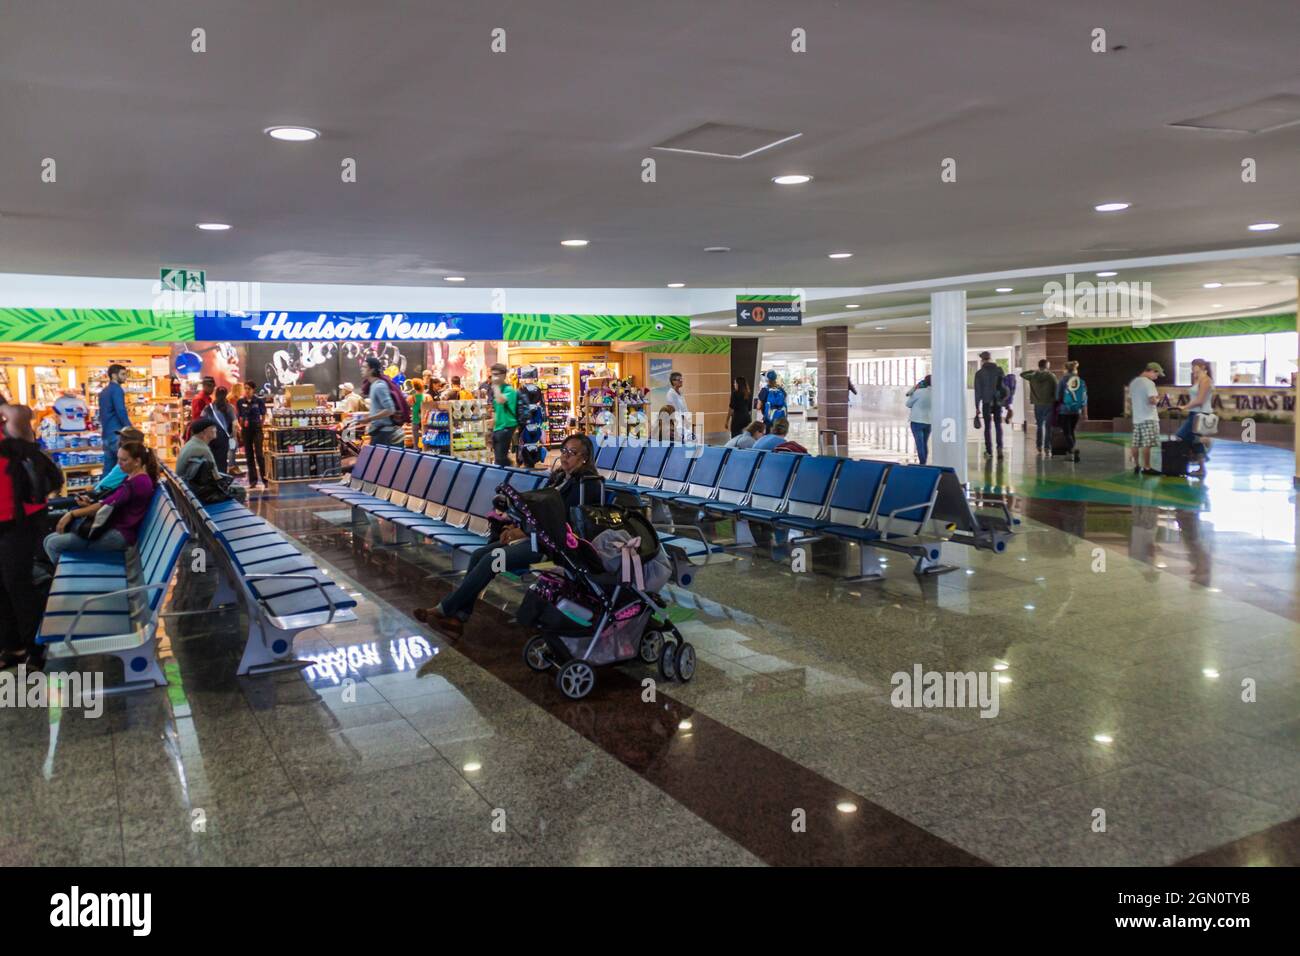 SAINT-DOMINGUE, RÉPUBLIQUE DOMINICAINE - SEP 25, 2015 : intérieur de l'aéroport international de Saint-Domingue de Las Americas. Banque D'Images